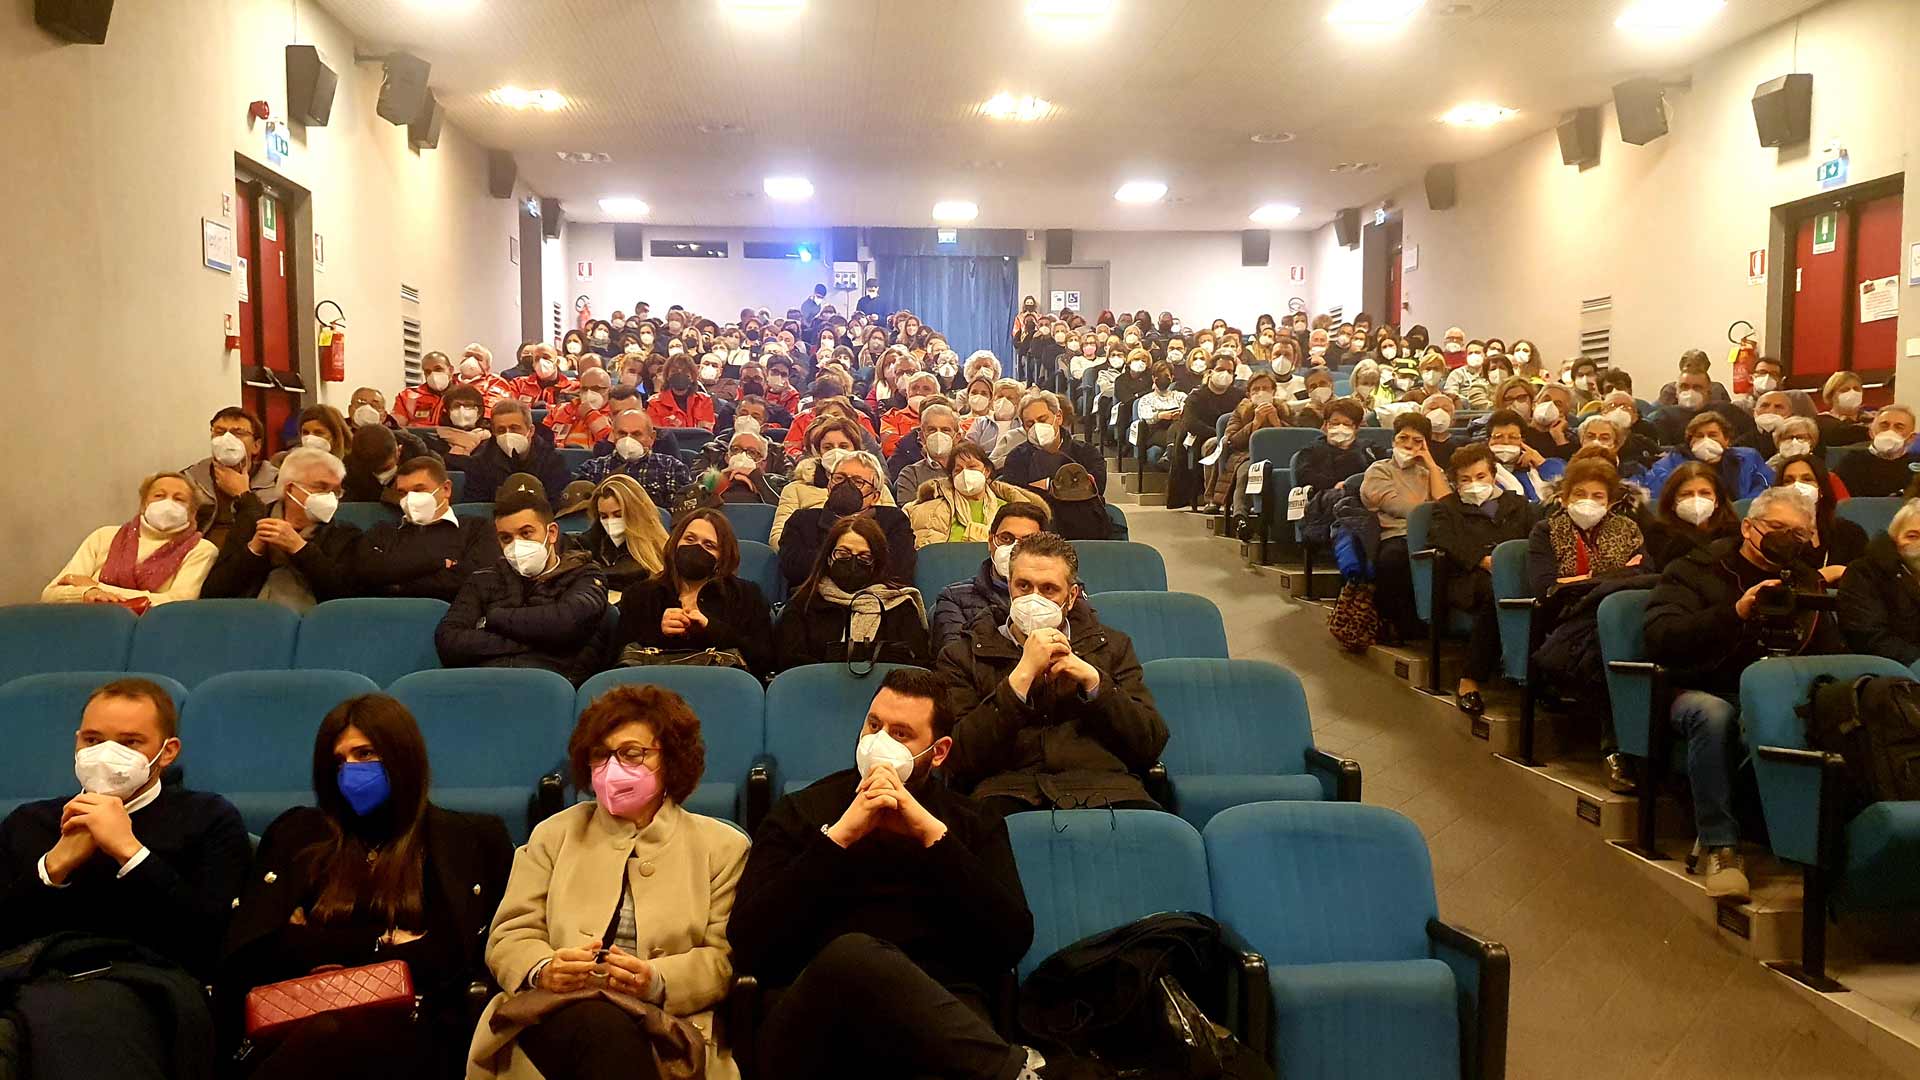 La sala gremita di gente per la proiezione di Io Resto a Pontoglio (BS)